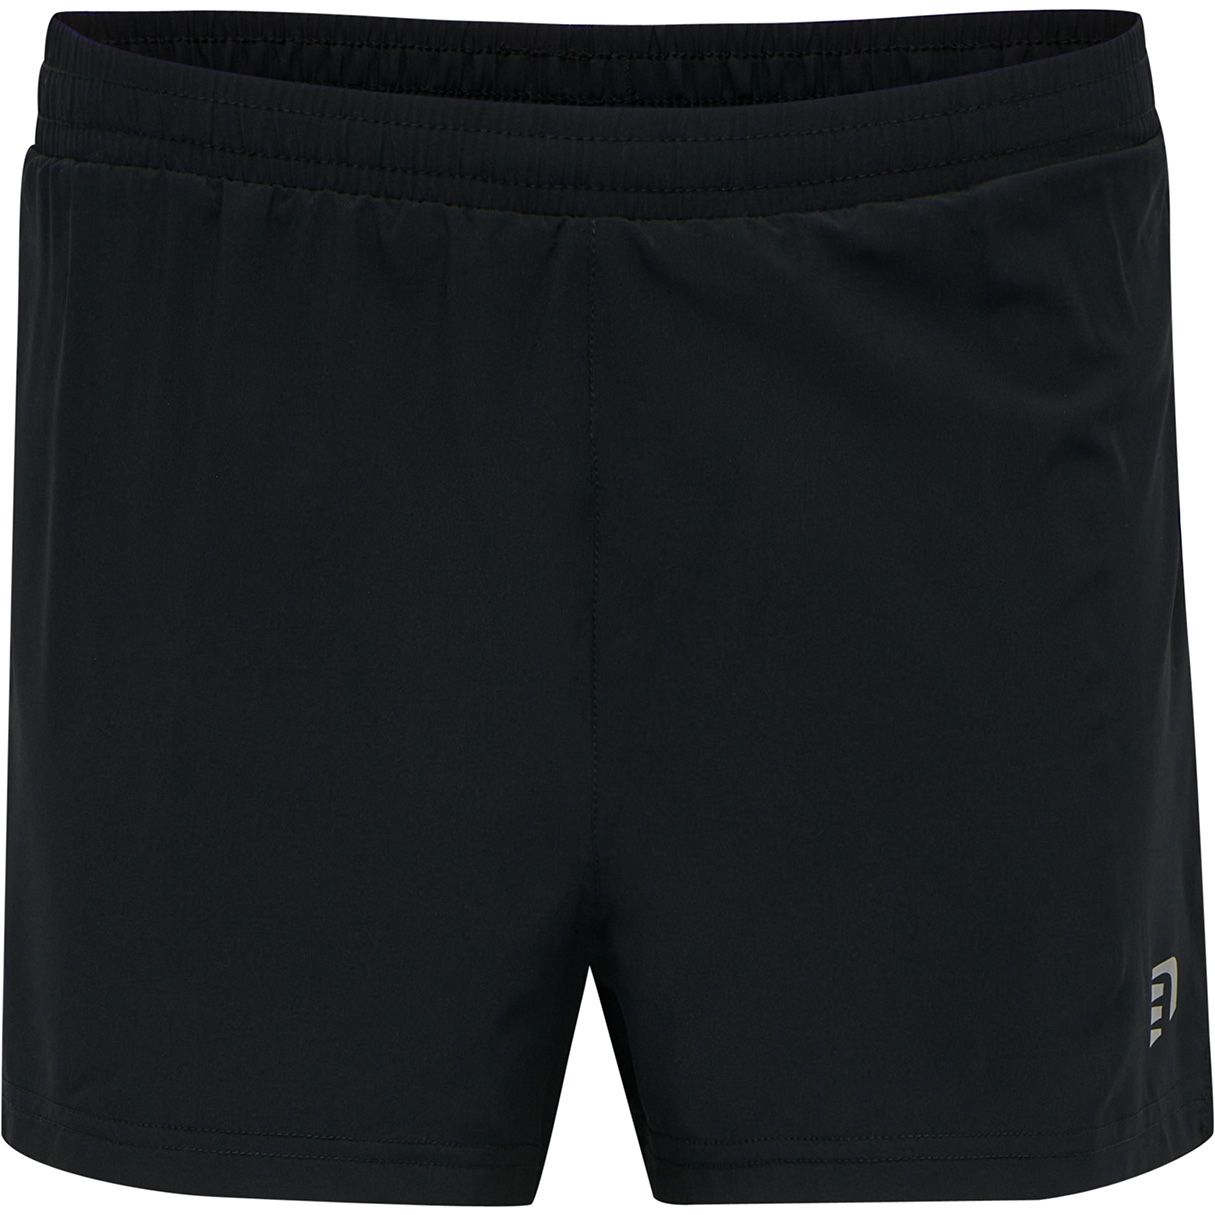 Produktbild von Newline Core Running Shorts Damen - schwarz